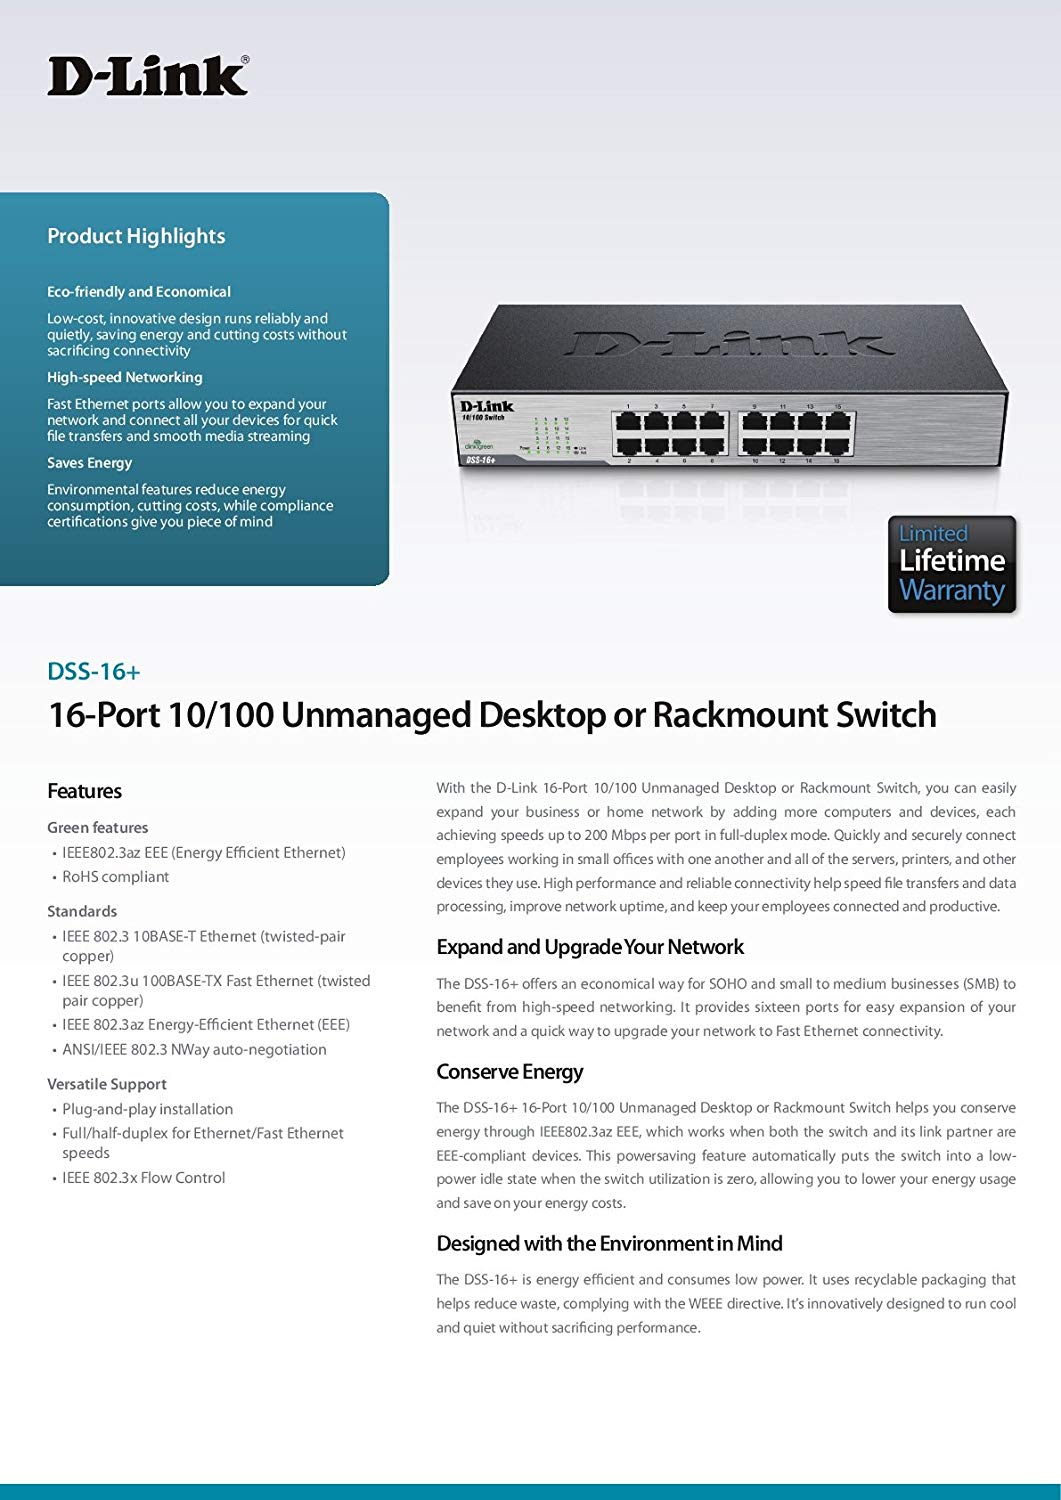 D-Link 16-Port 10/100 Unmanaged Ethernet Desktop Switch, Desktop/Rack Mountable (DSS-16+) - image 4 of 6